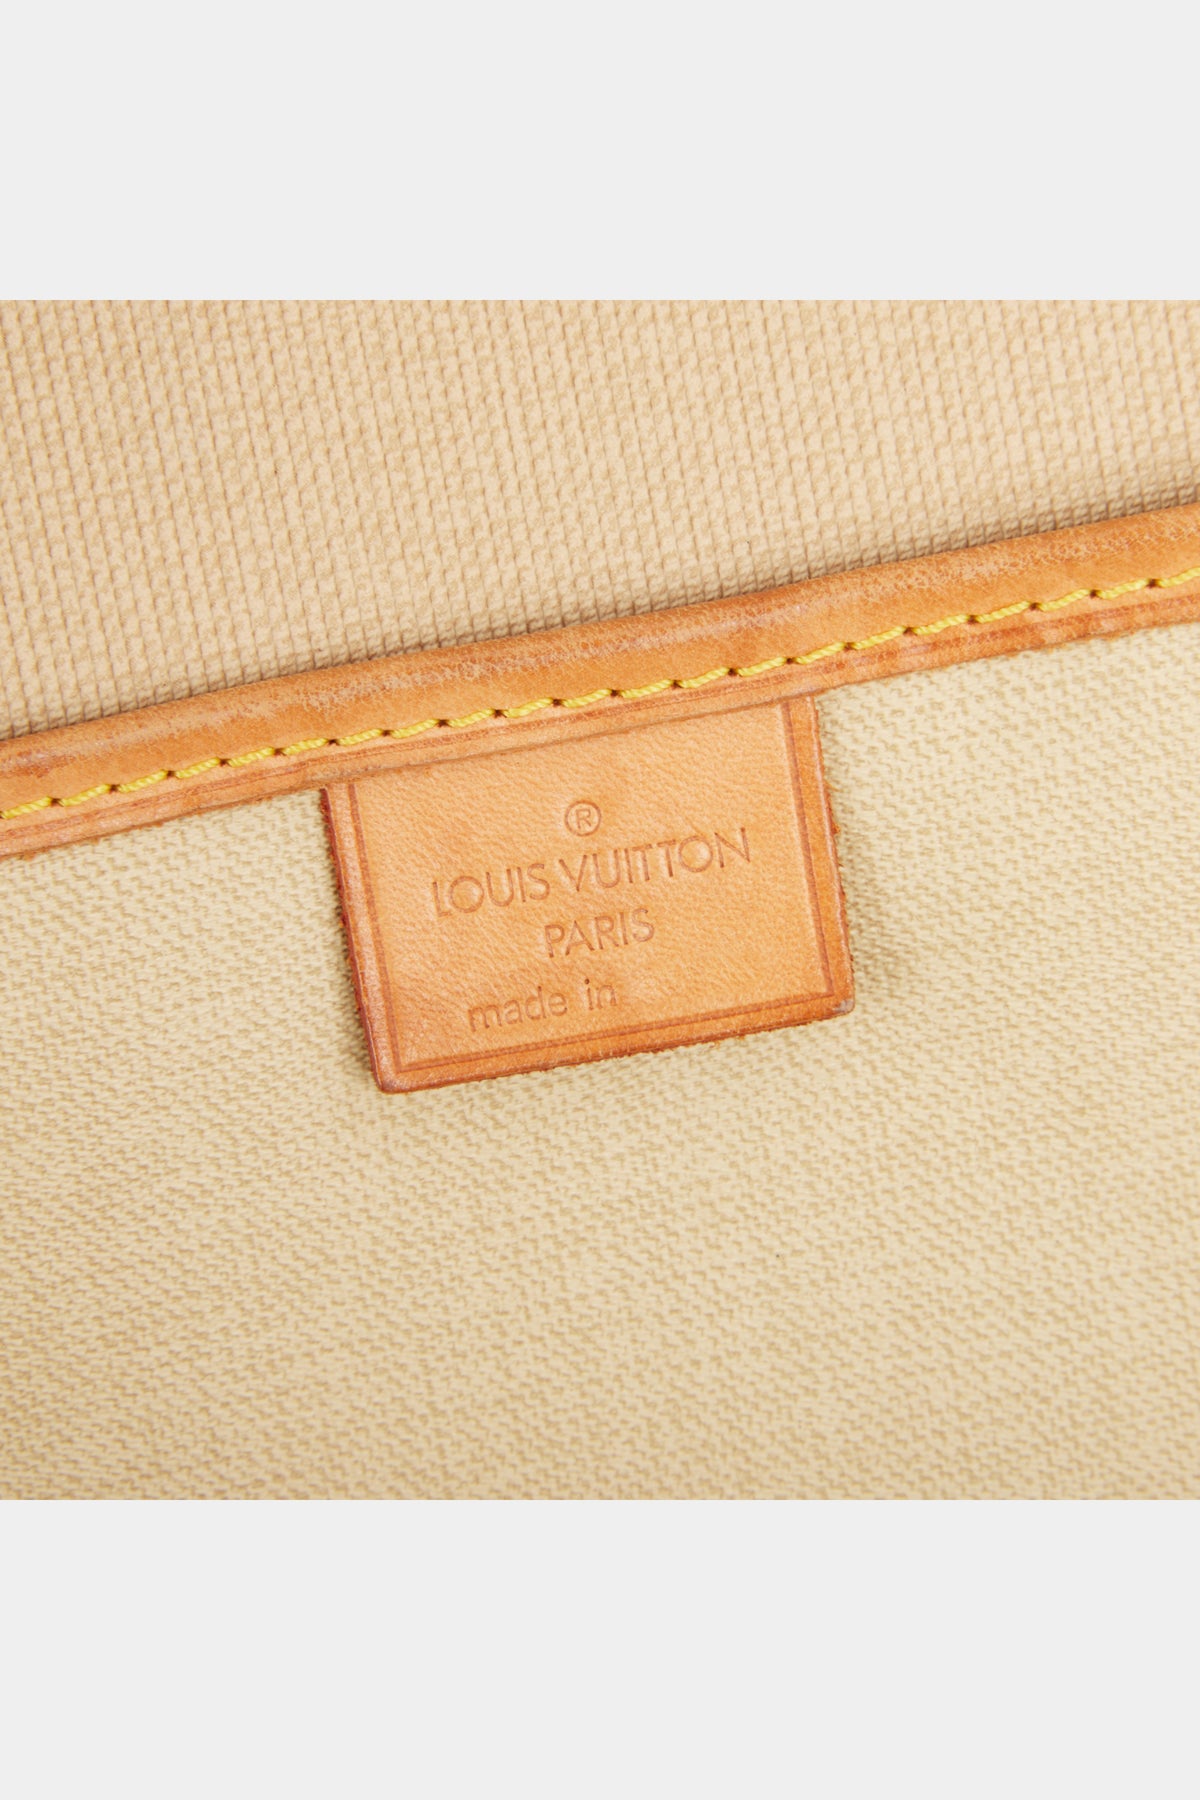 Lot 137 - Louis Vuitton Monogram Excursion Bag